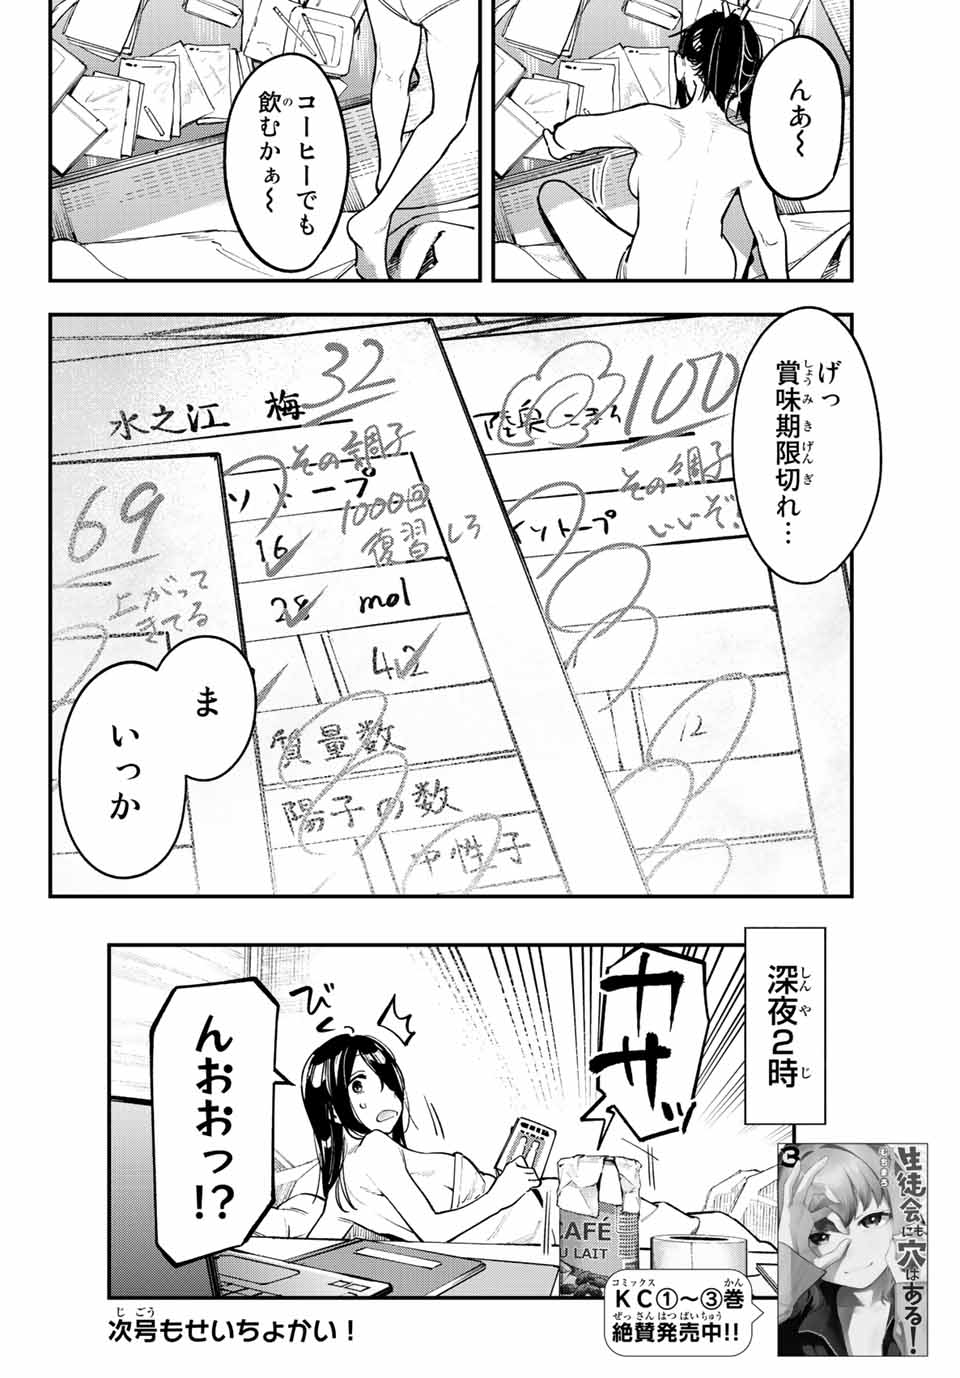 Seitokai mi mo Ana wa Aru! - Chapter 52 - Page 8